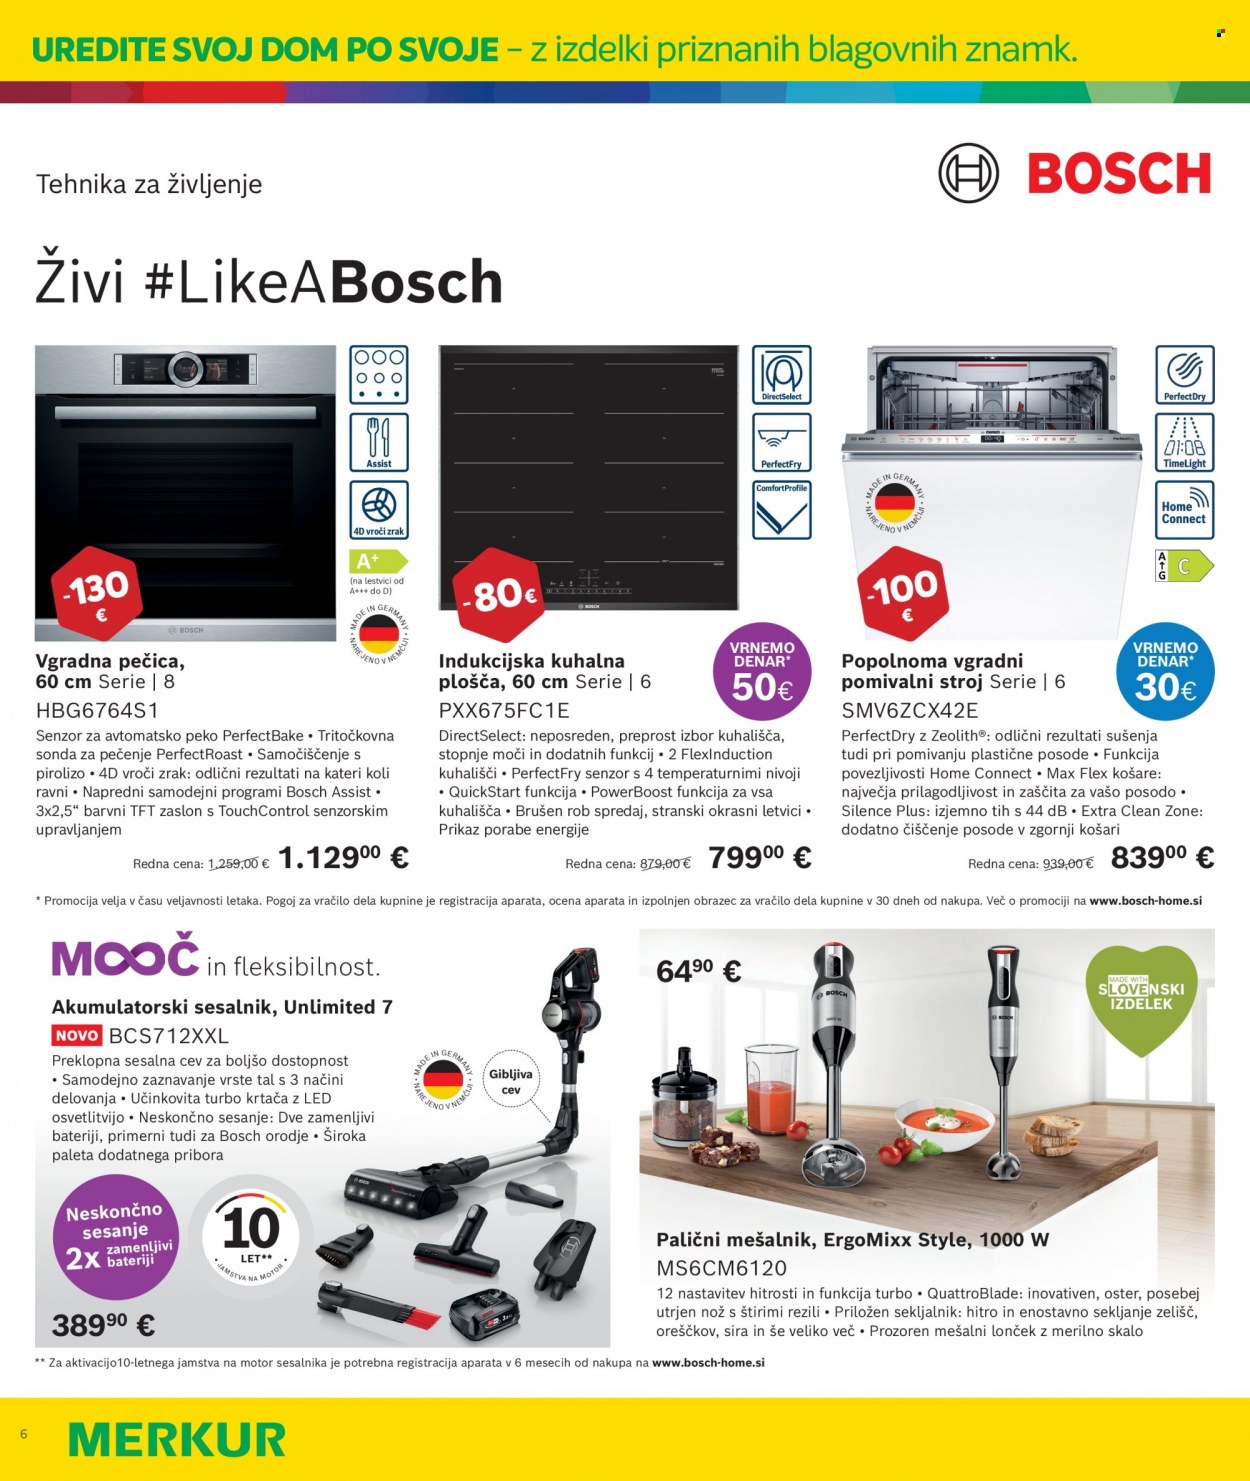 thumbnail - Merkur katalog - 17.11.2022 - 12.12.2022 - Ponudba izdelkov - Bosch, vgradna pečica, pomivalni stroj, vgradni pomivalni stroj, akumulatorski sesalnik, sesalnik. Stran 6.